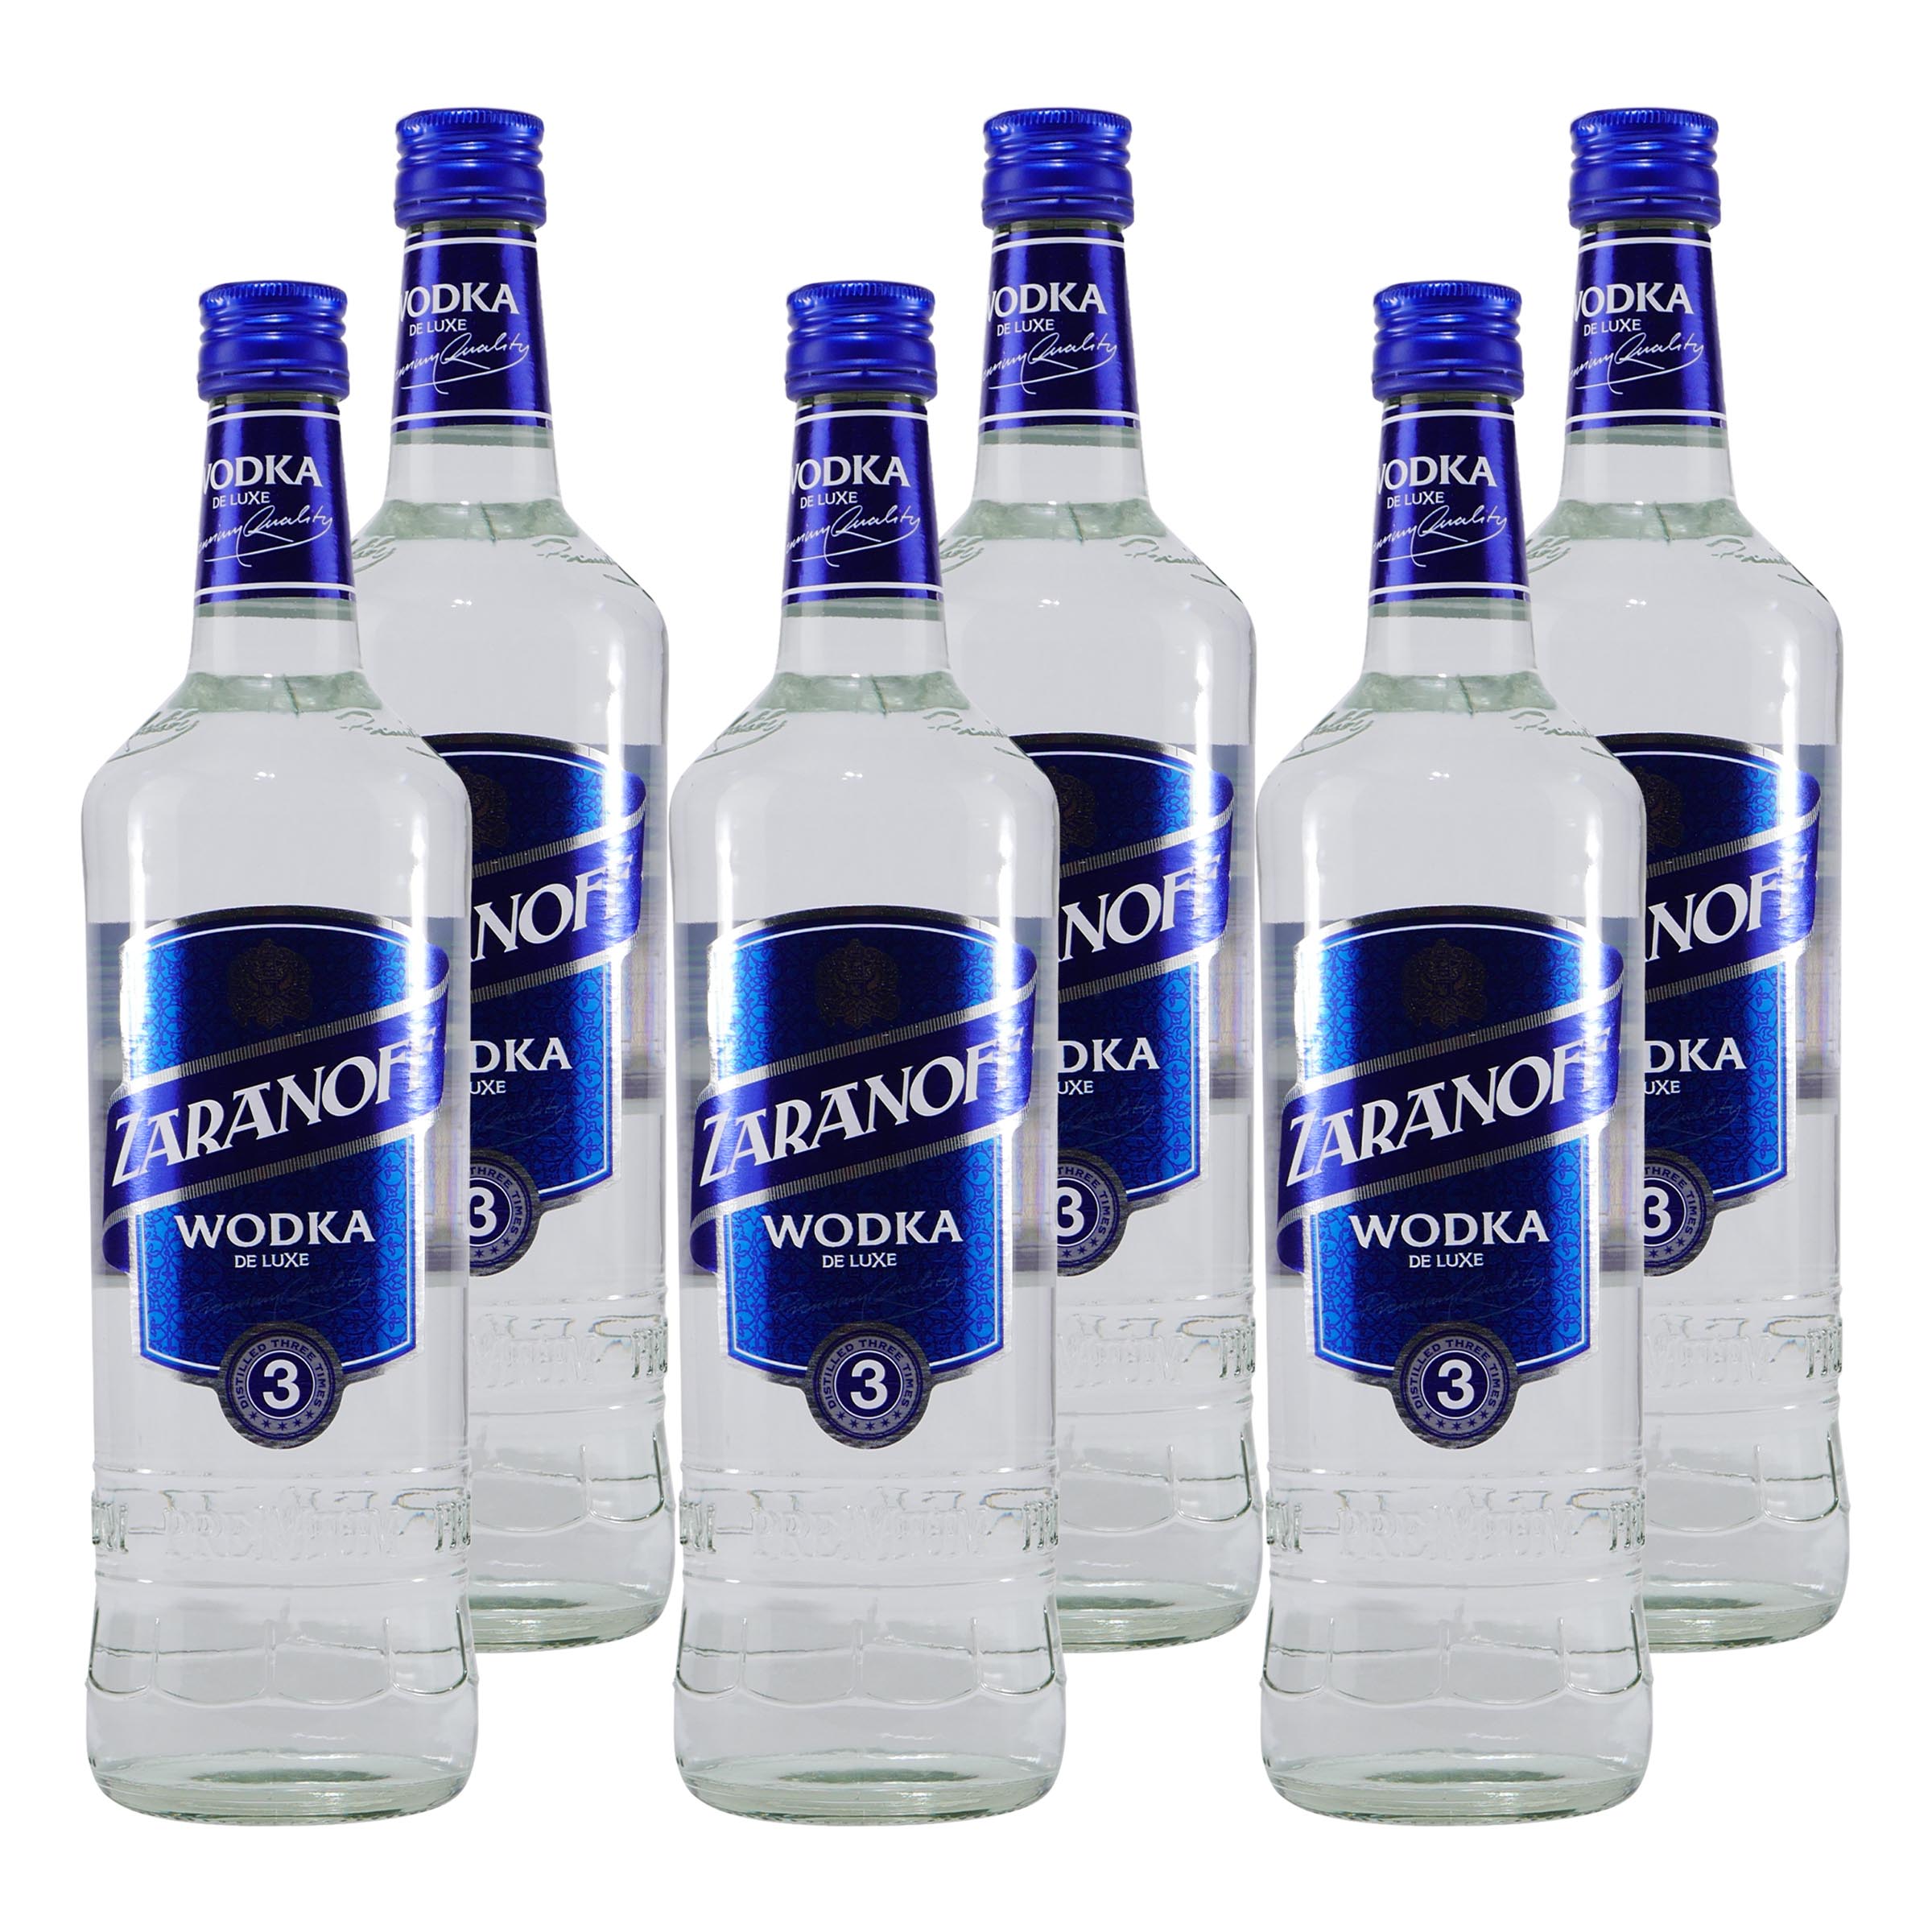 Zaranoff Wodka (6 x 0,7L)